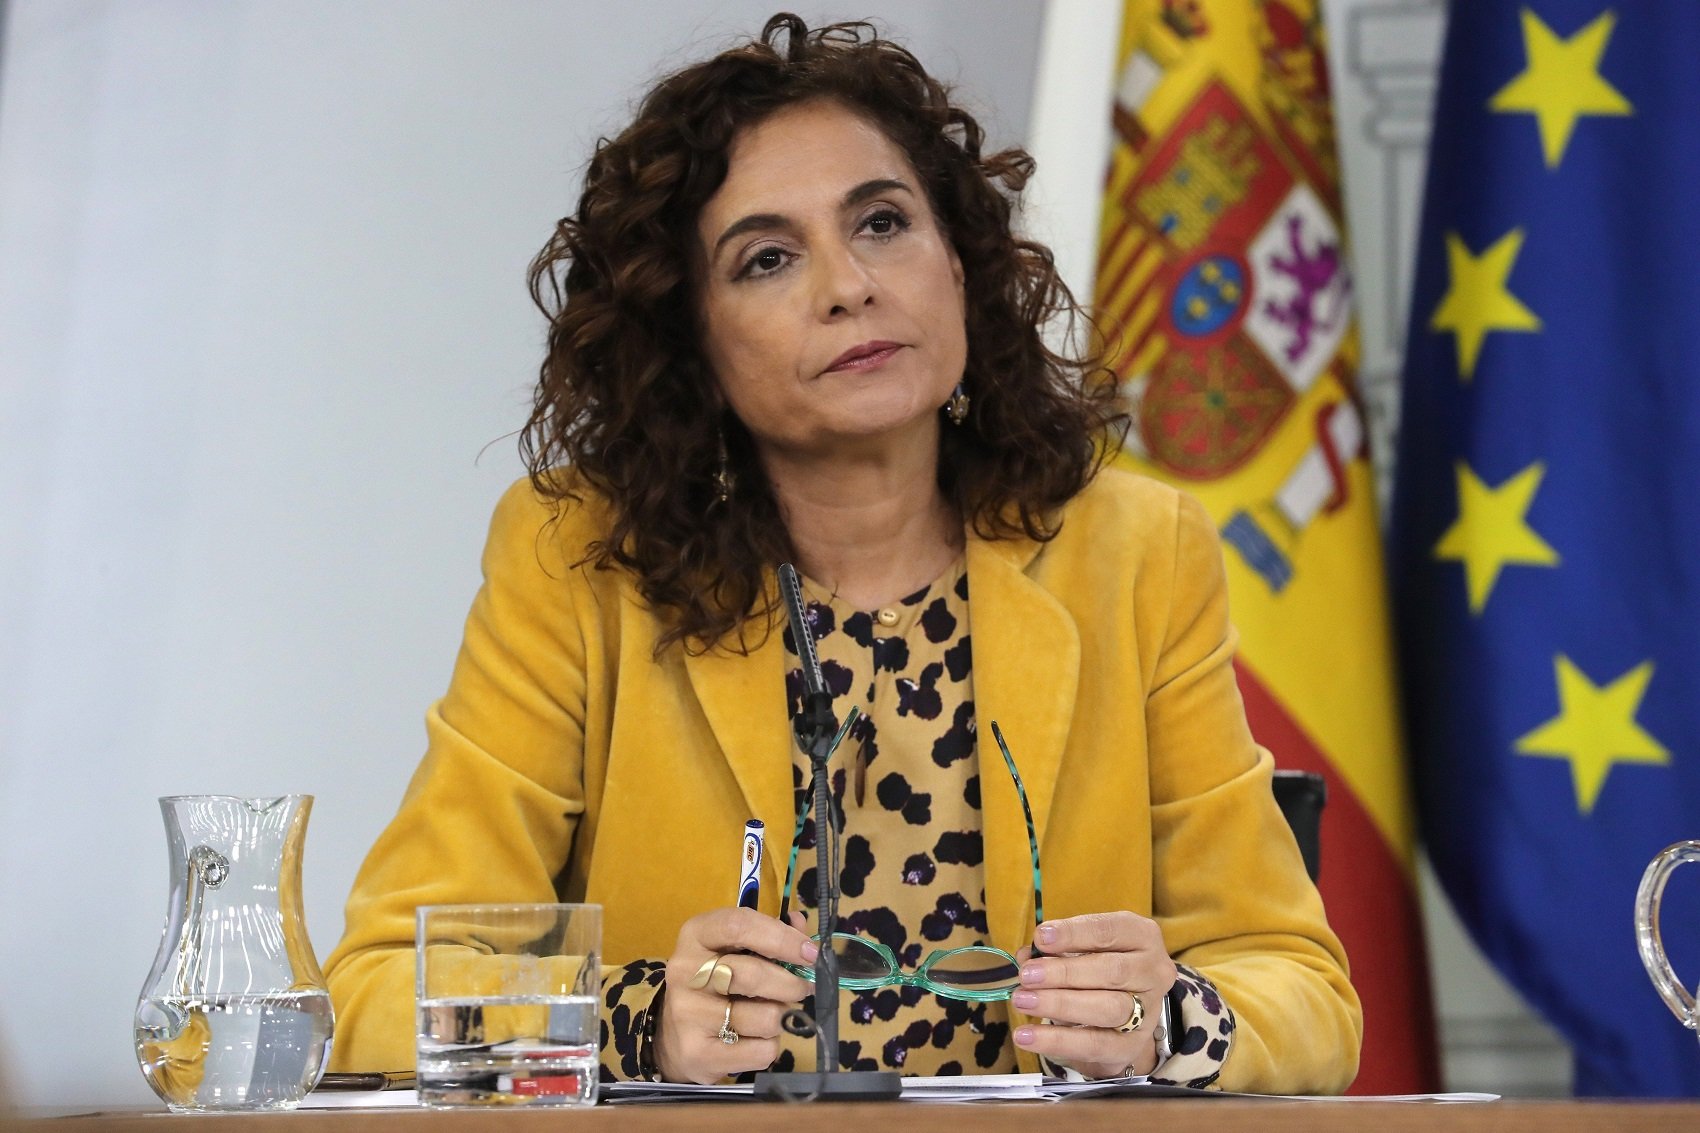 El govern espanyol carrega contra el discurs de Torra: "Segueix en el monòleg"